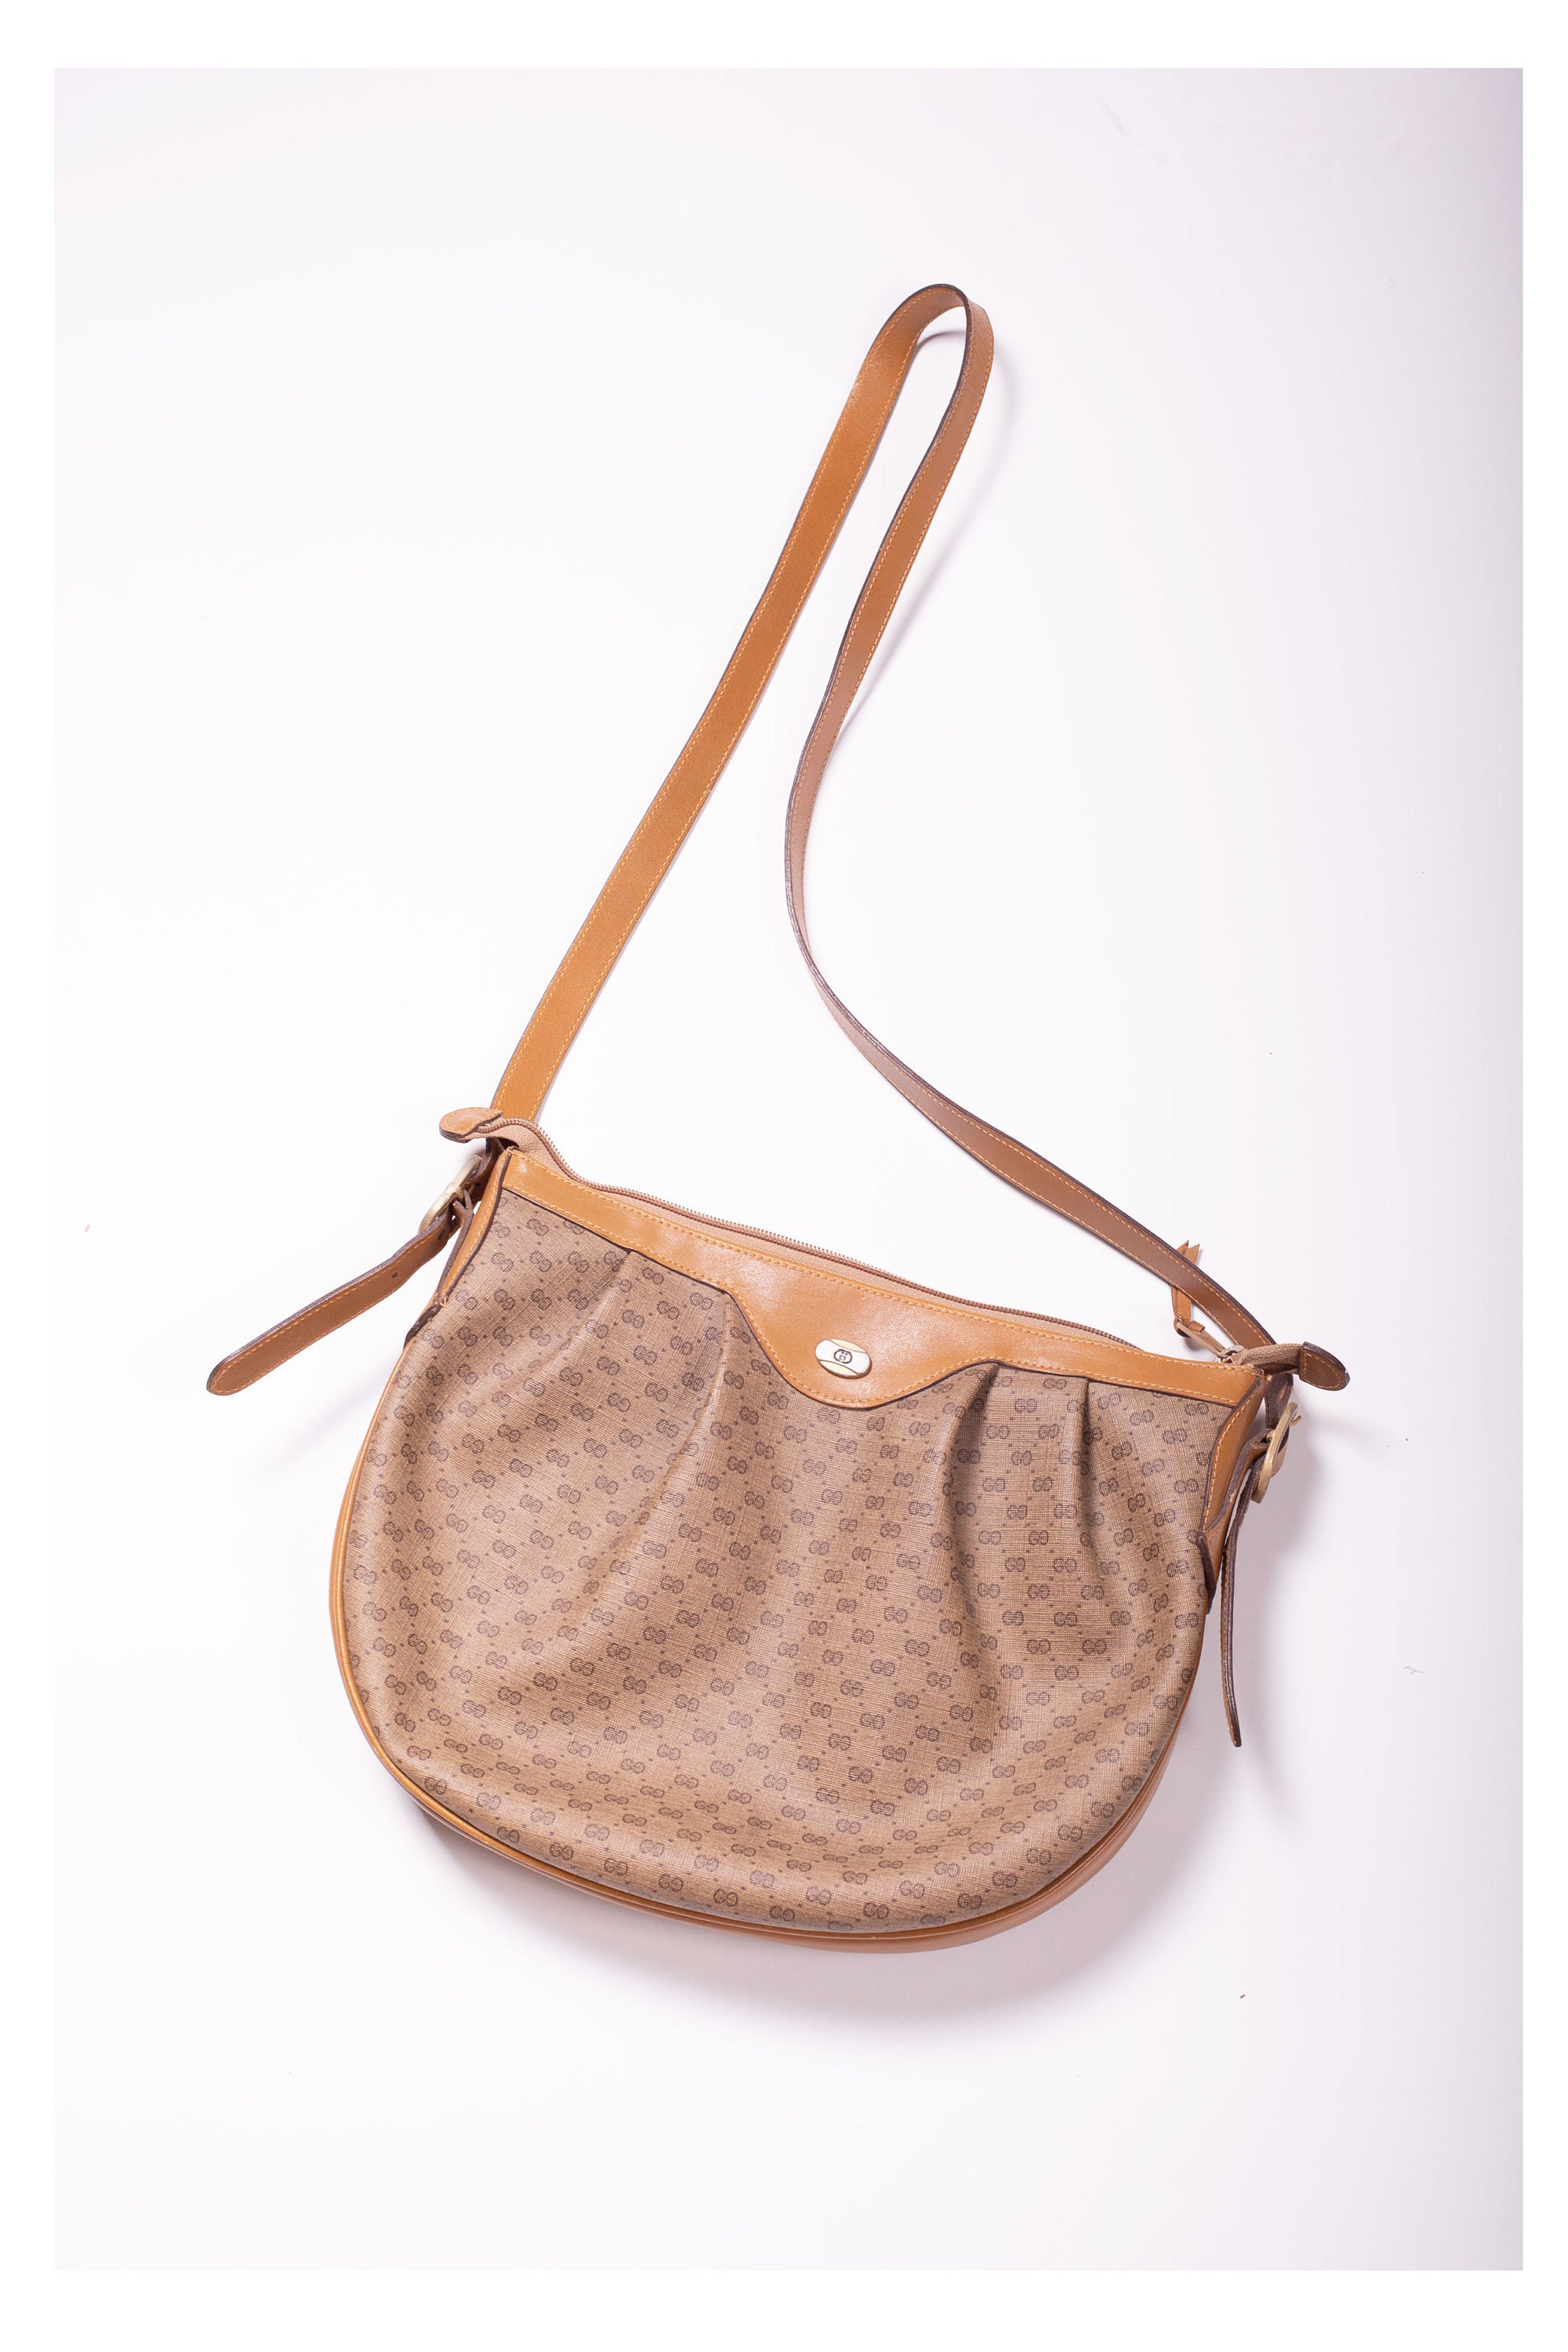 1980s Brown Monogram Vintage Gucci Handbag With Adjustable Strap